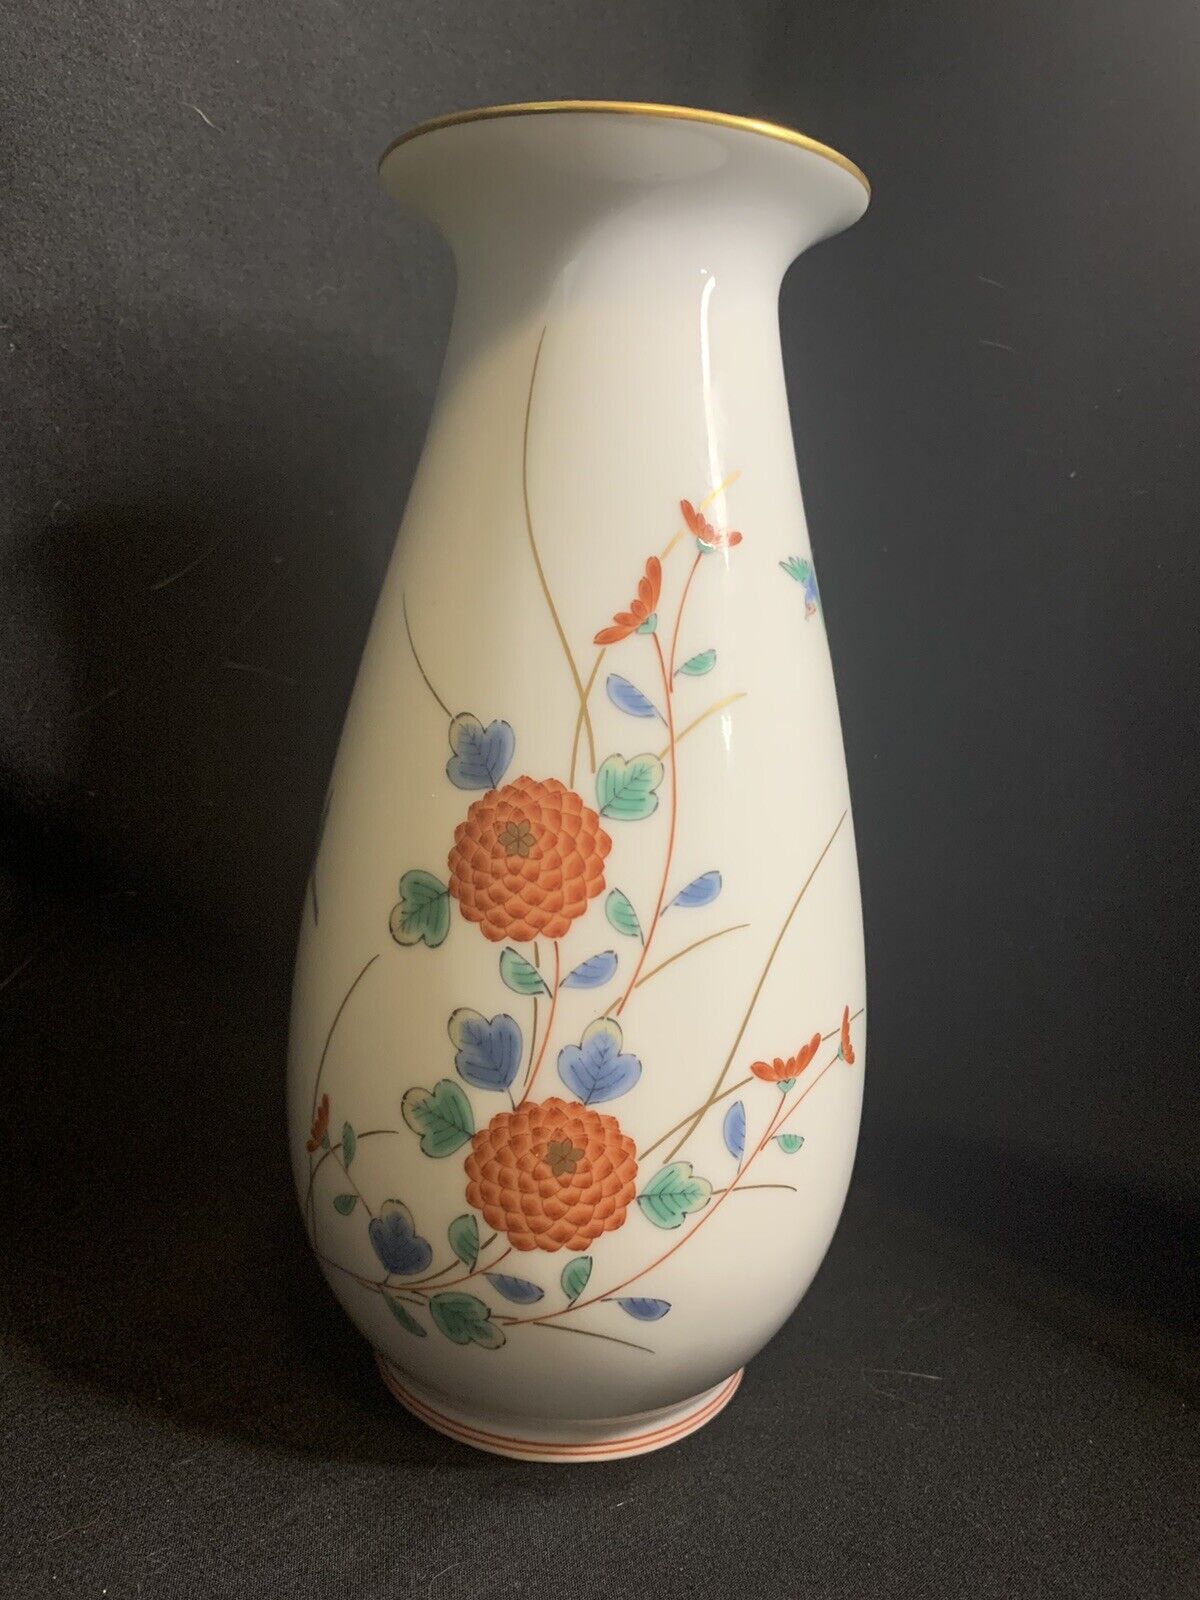 Vintage Japanese Porcelain Floral Vase, 8 3/4” Tall, Marked